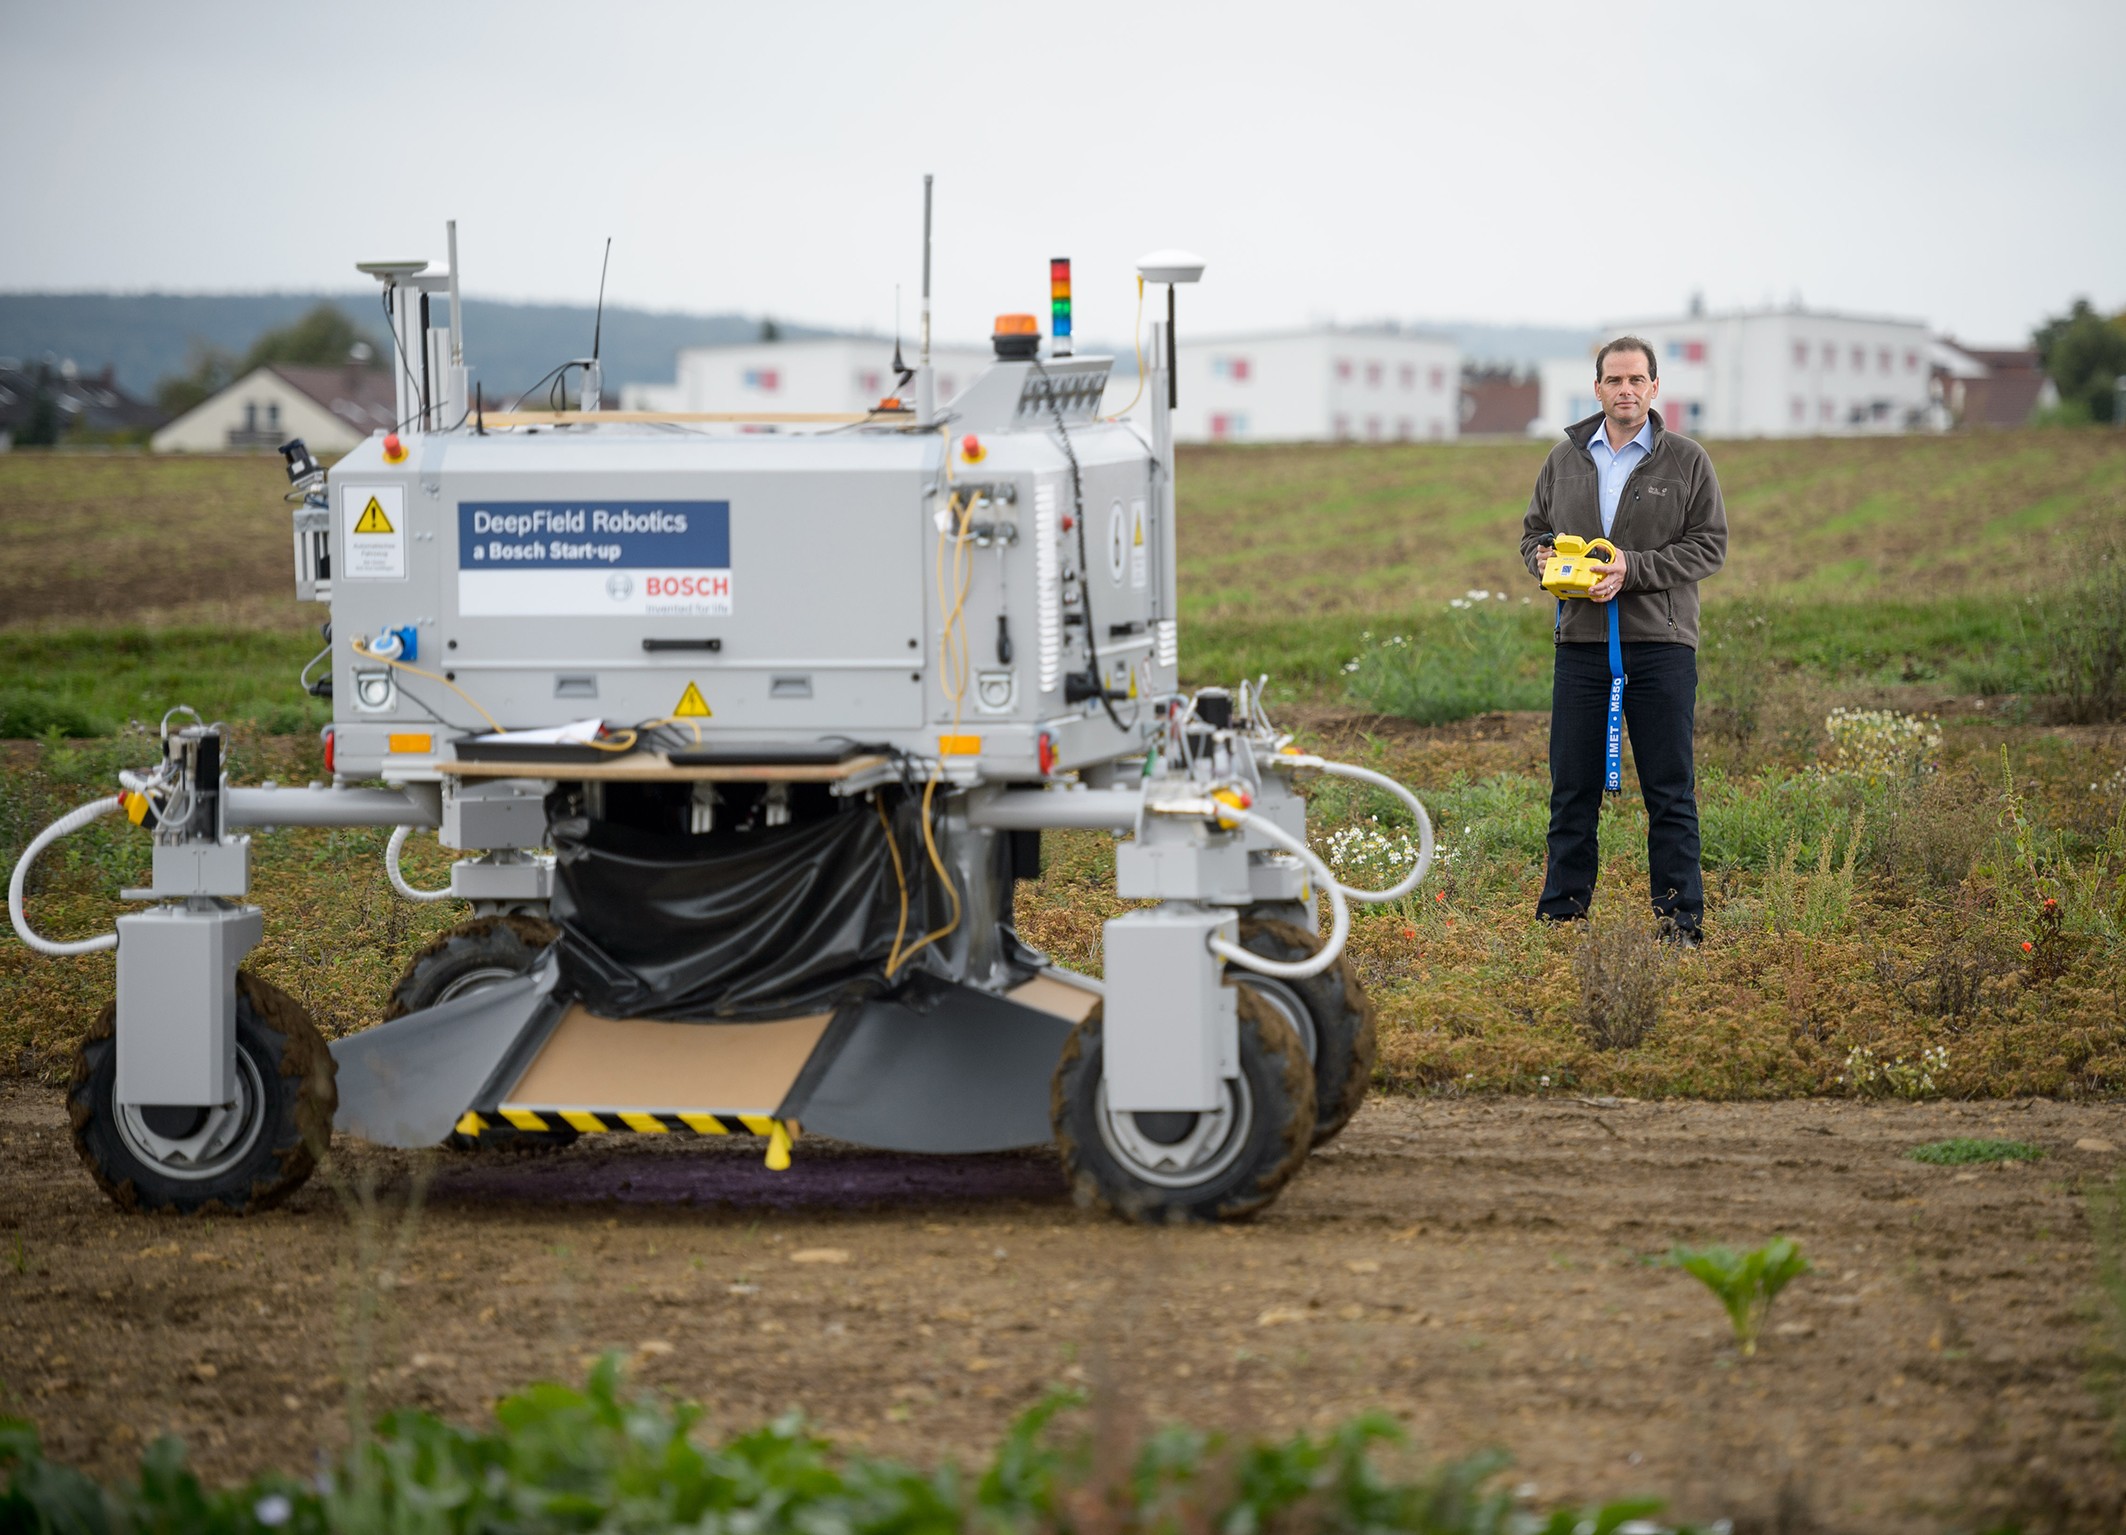 Intelligenza sui campi: il robot agricolo Bosch diserba in modo automatico e senza veleni